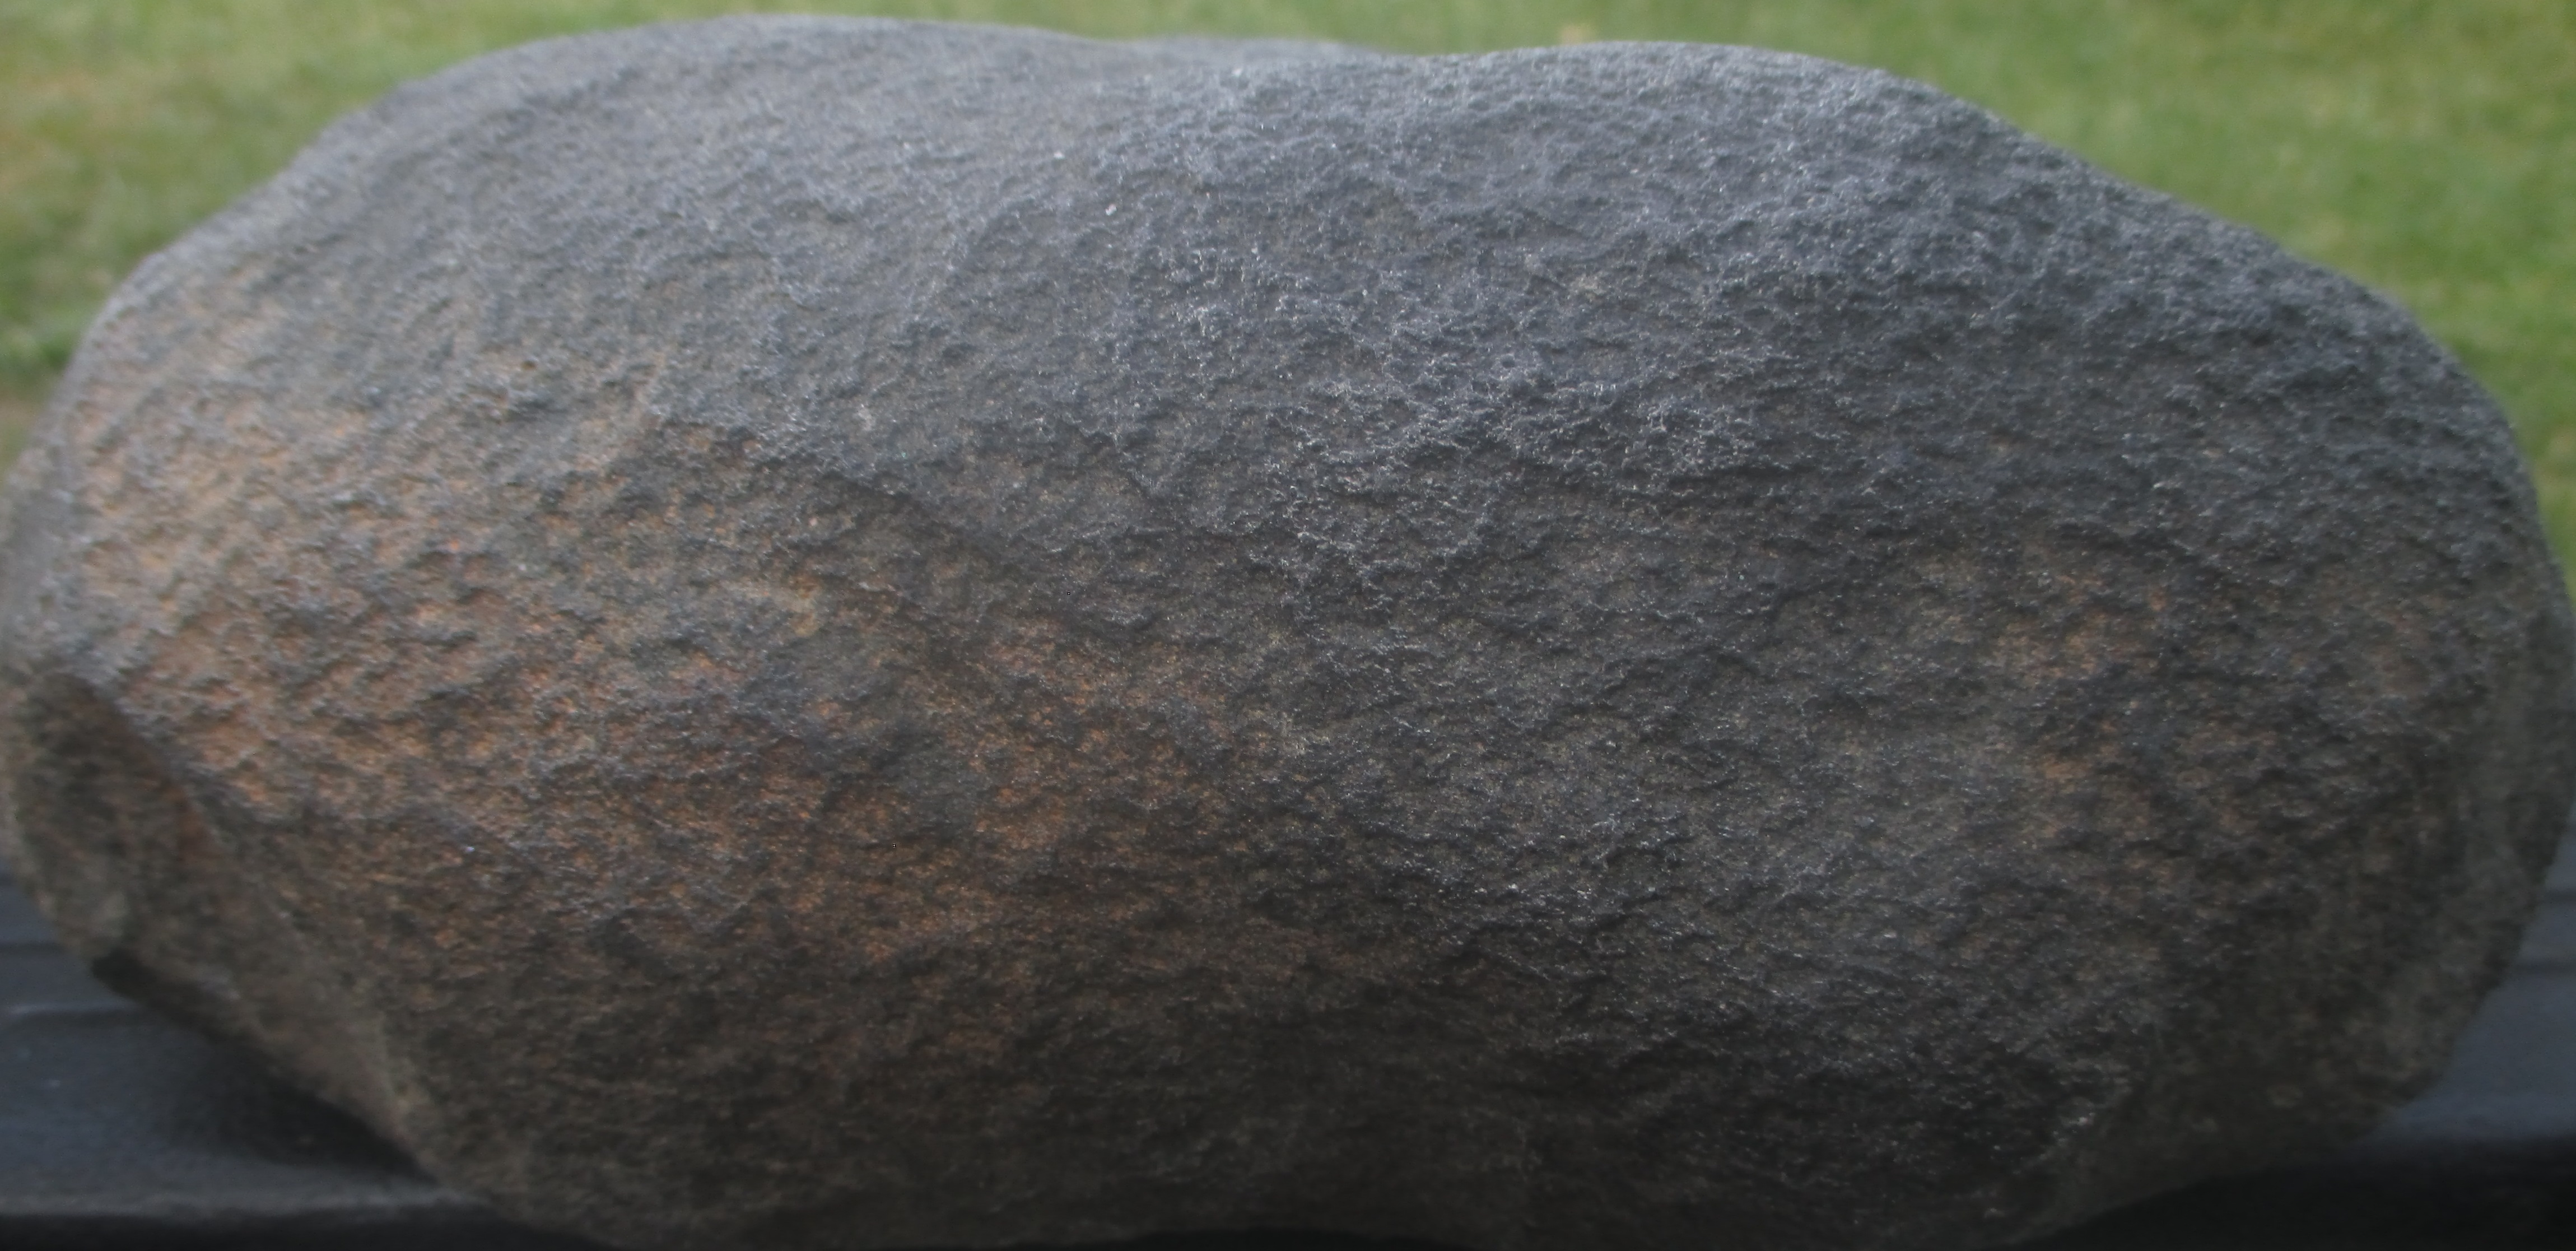 Die Ansicht der Dicke des Meteoriten zeigt einige verwitterte Stellen